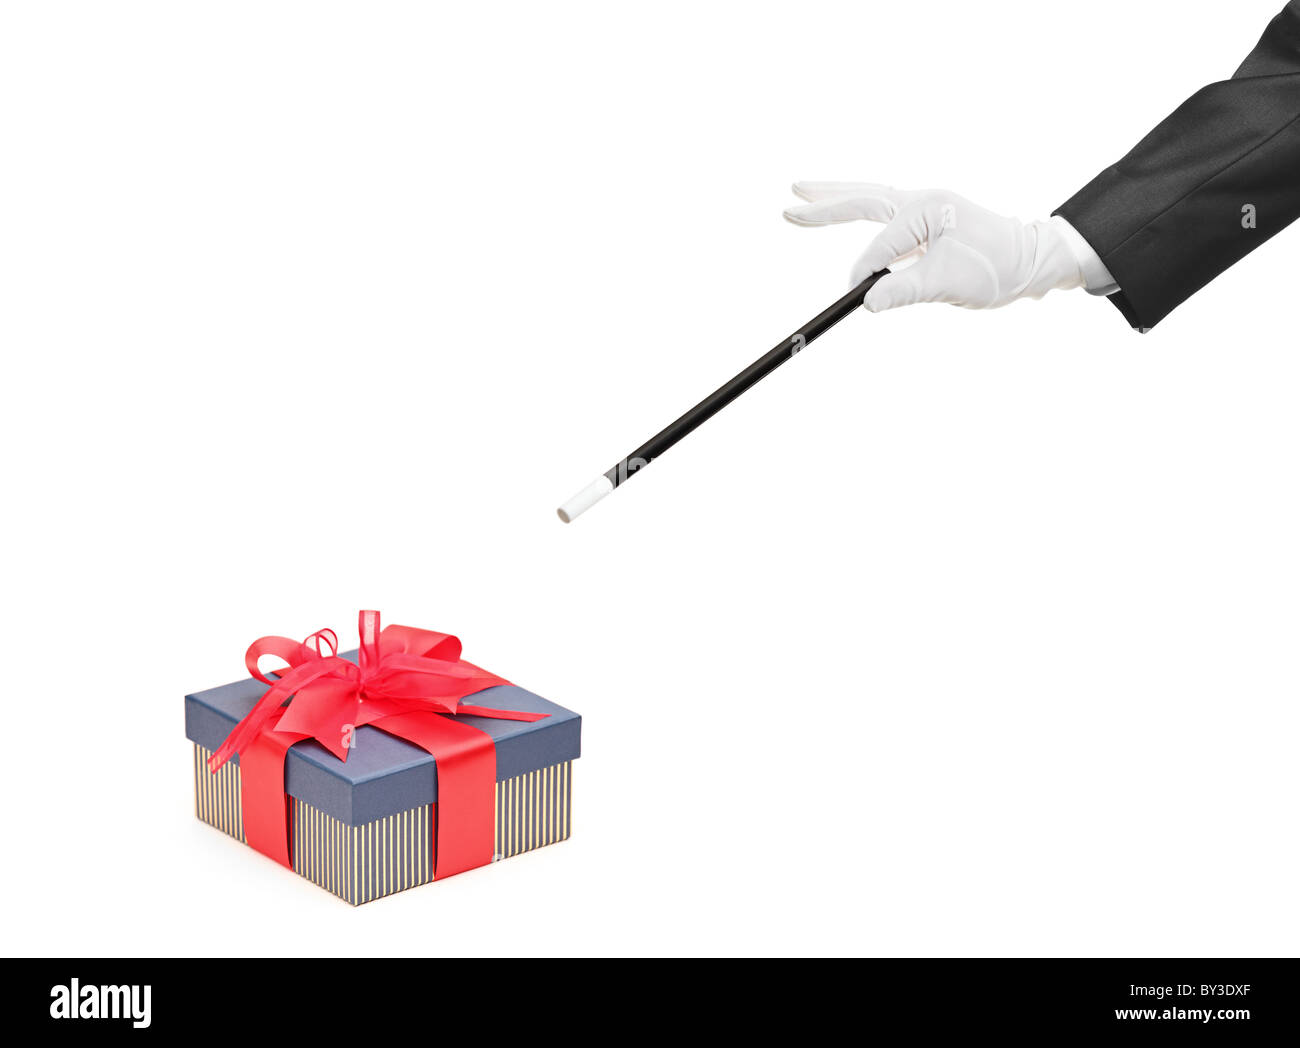 Un magicien avec une baguette magique sur les cadeaux emballés Banque D'Images